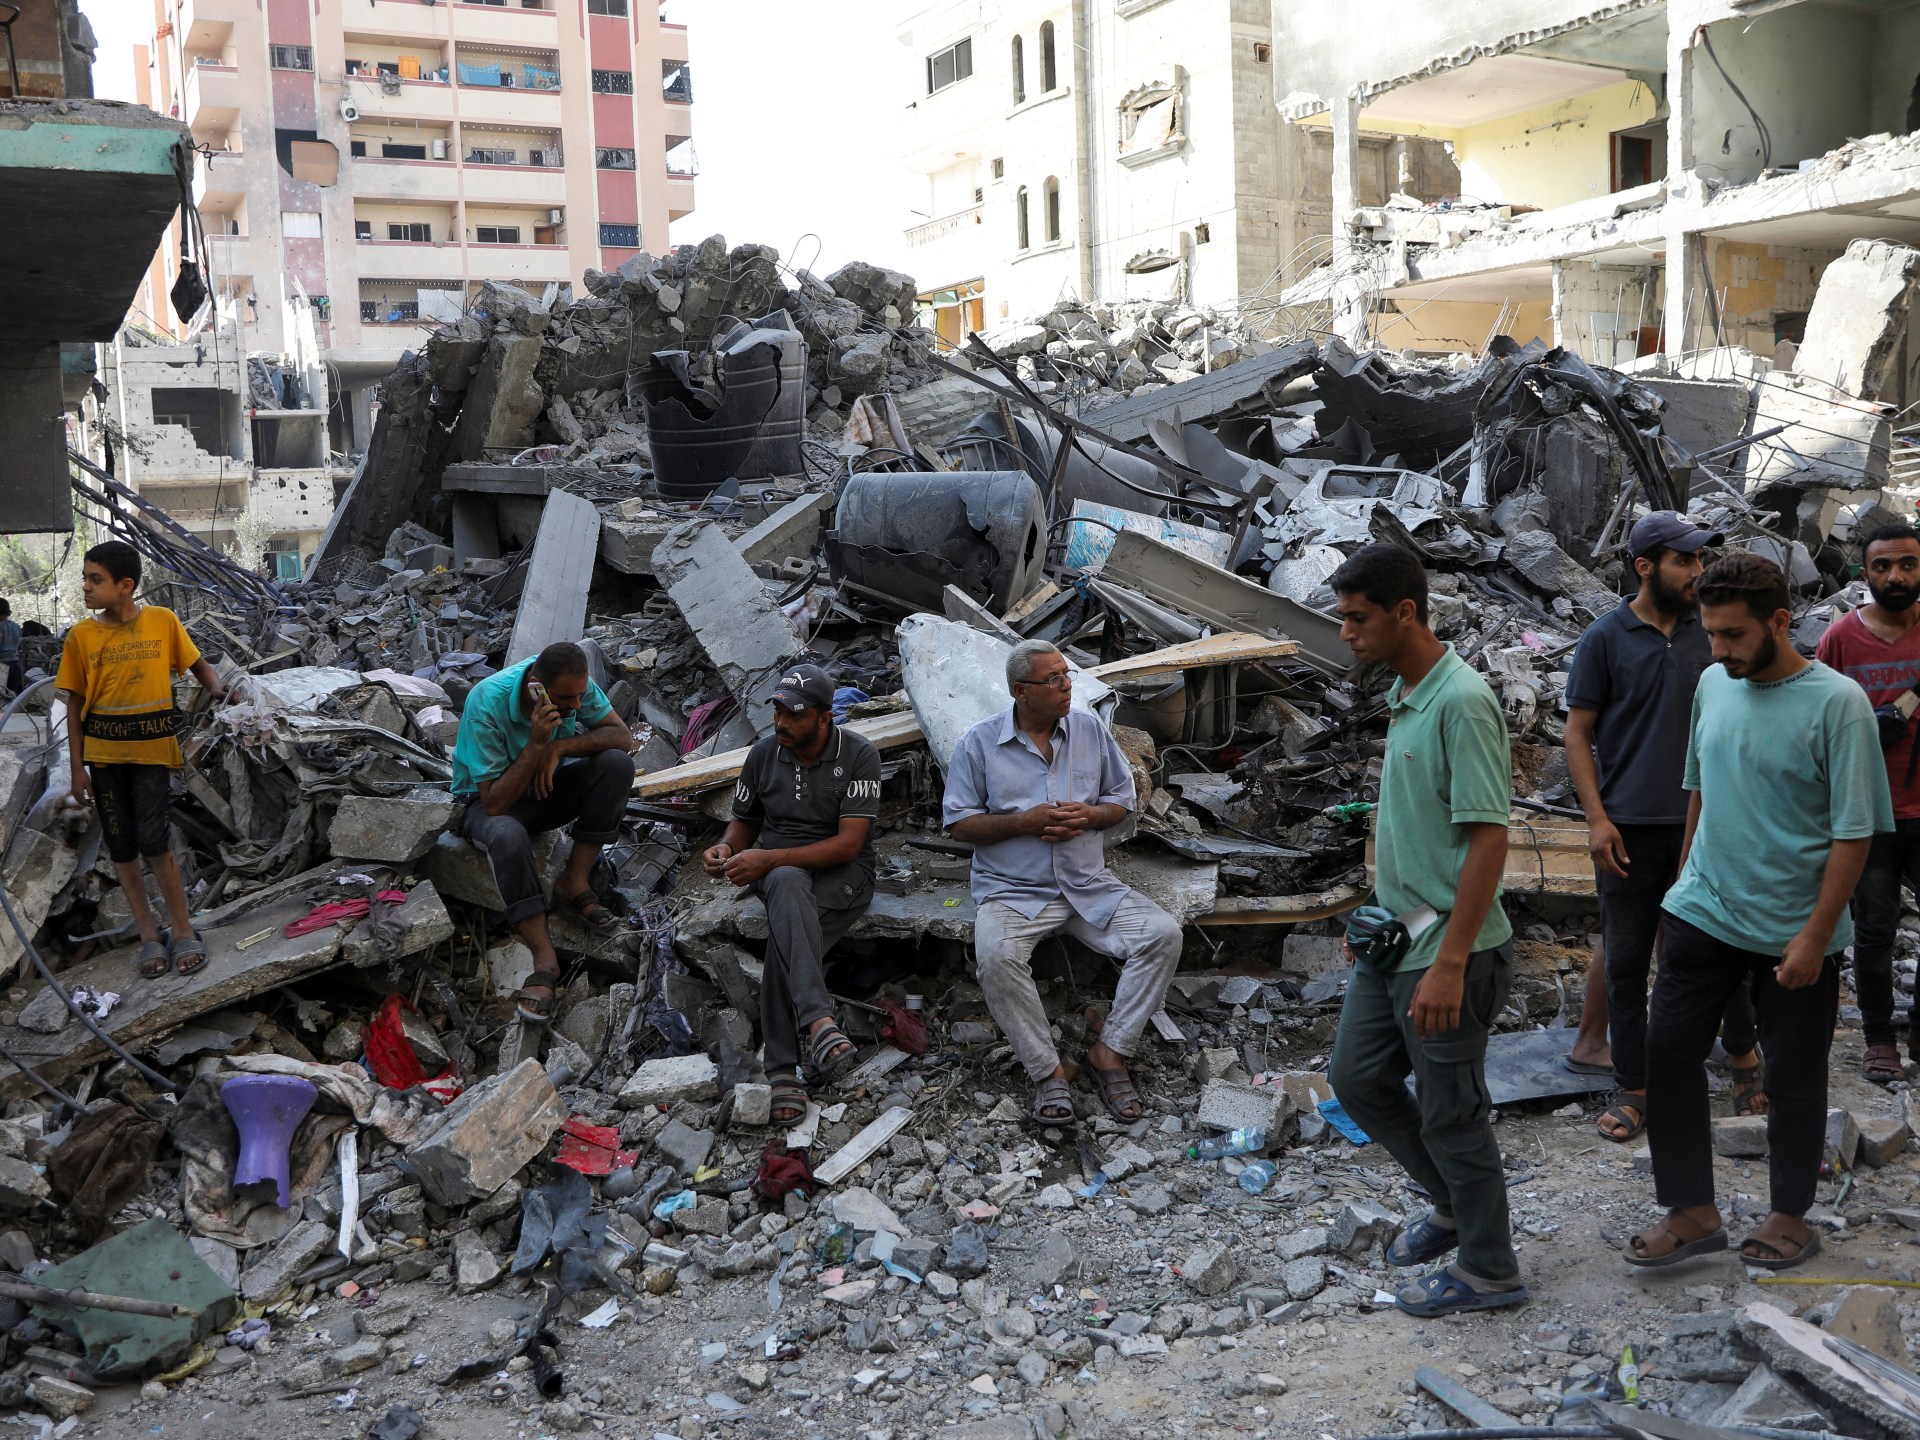 حماس والجهاد الإسلامي في فلسطين يقدمان رداً على خطة وقف إطلاق النار في غزة التي تدعمها الأمم المتحدة |  أخبار غزة